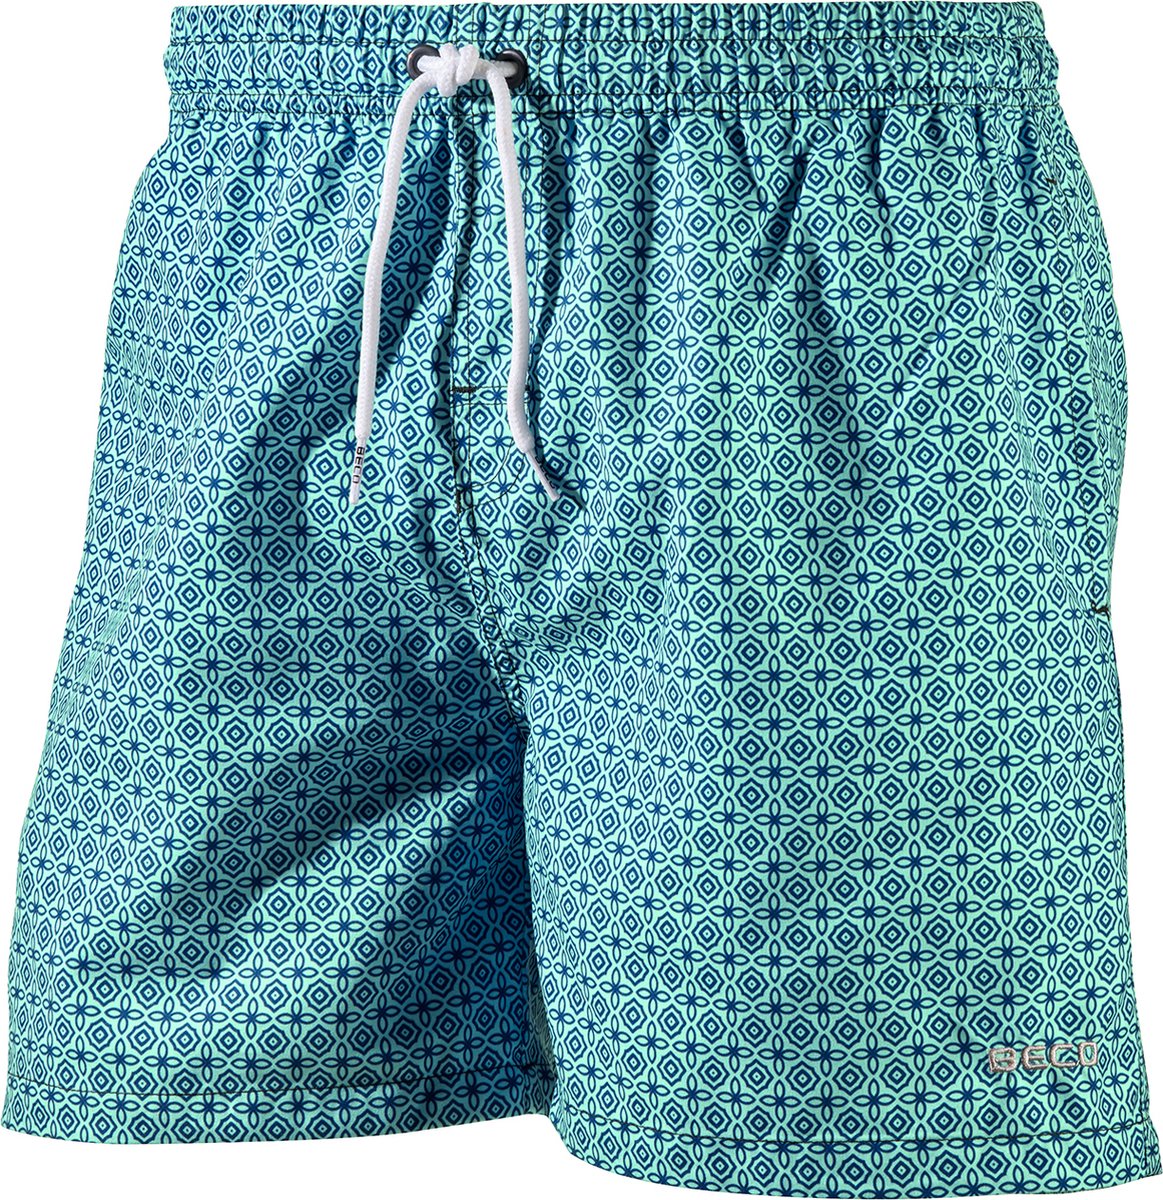 BECO shorts, binnenbroekje, elastische band, lengte 42 cm, 3 zakjes, mint groen, maat S